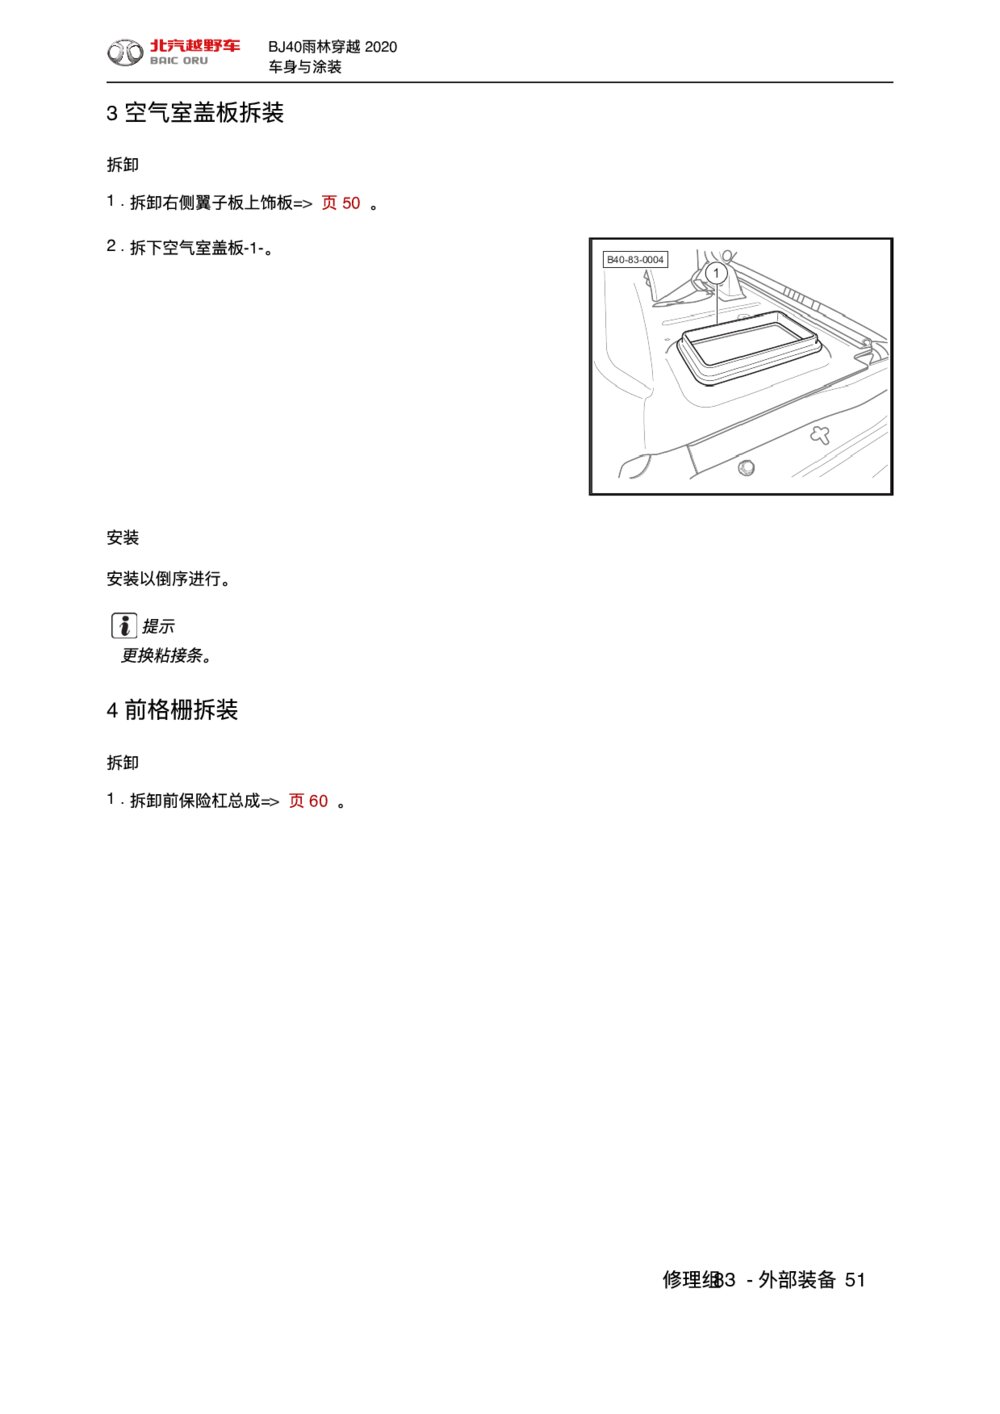 2020款北京BJ40空气室盖板拆装维修手册